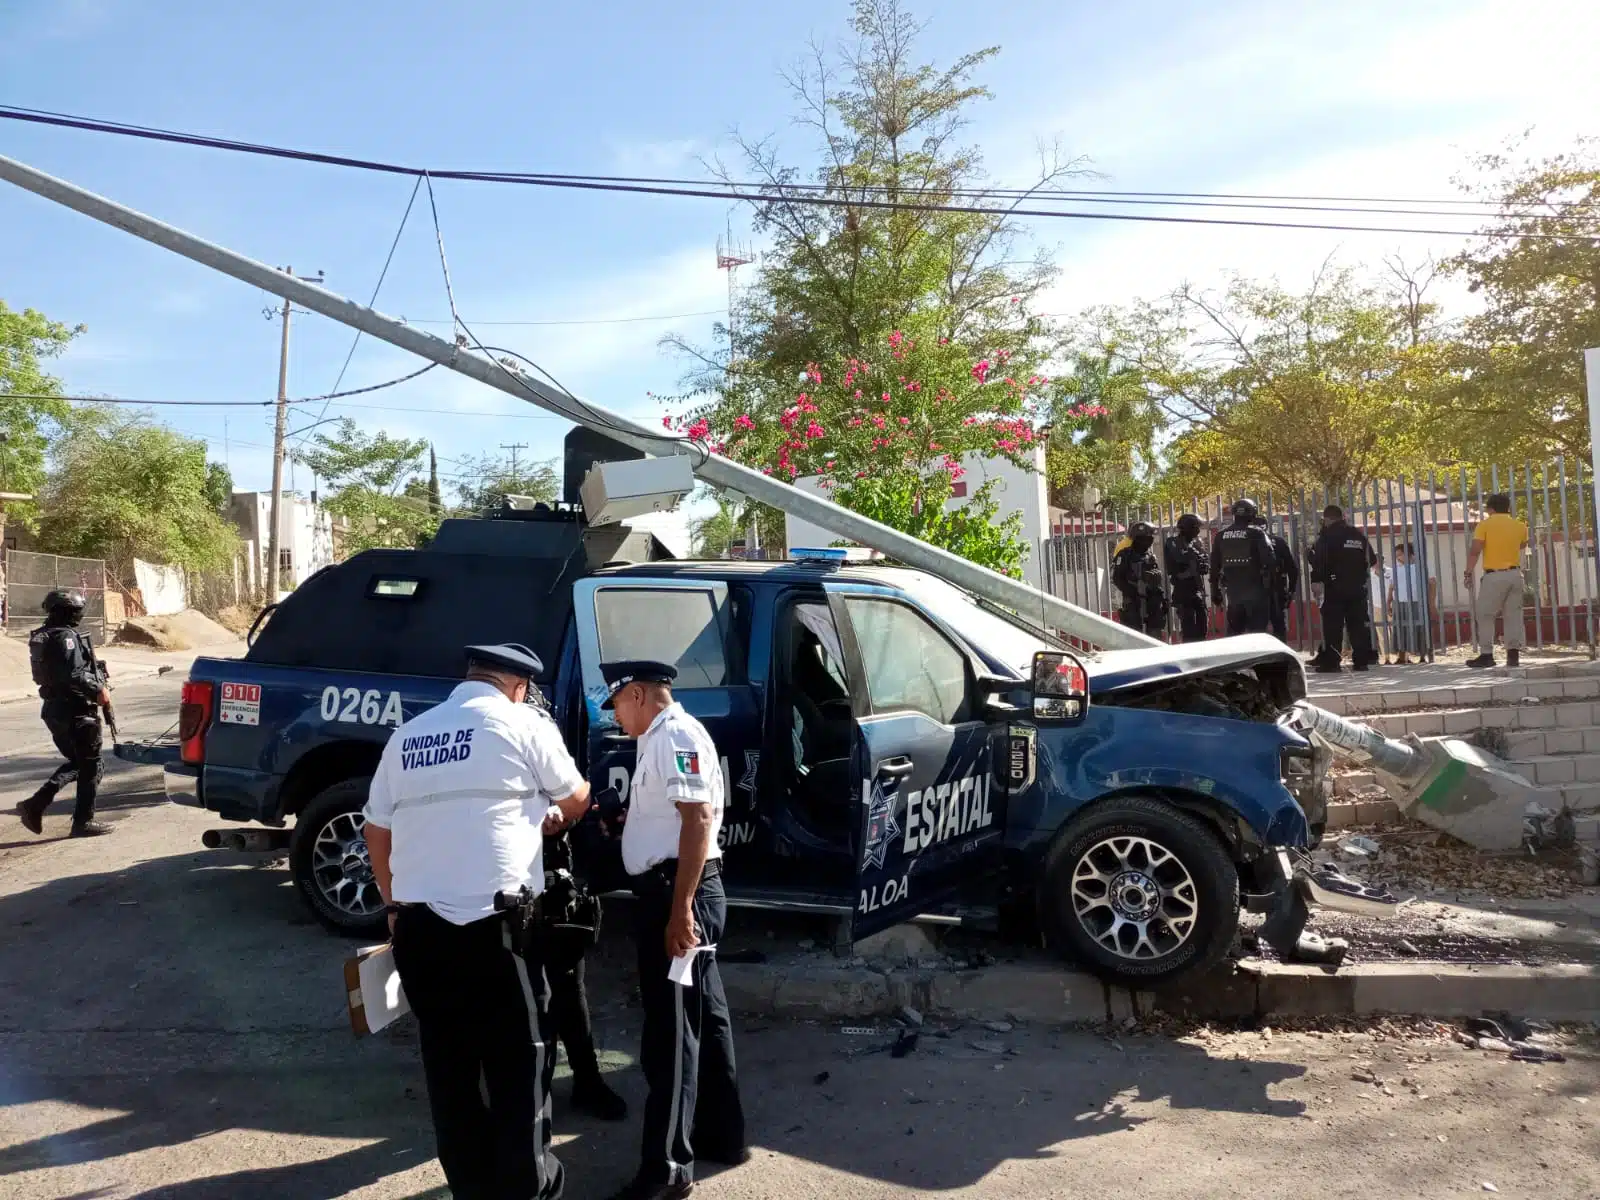 Surgen detalles de la persecución en Culiacán que culminó en choque: Policías iban tras grupo armado